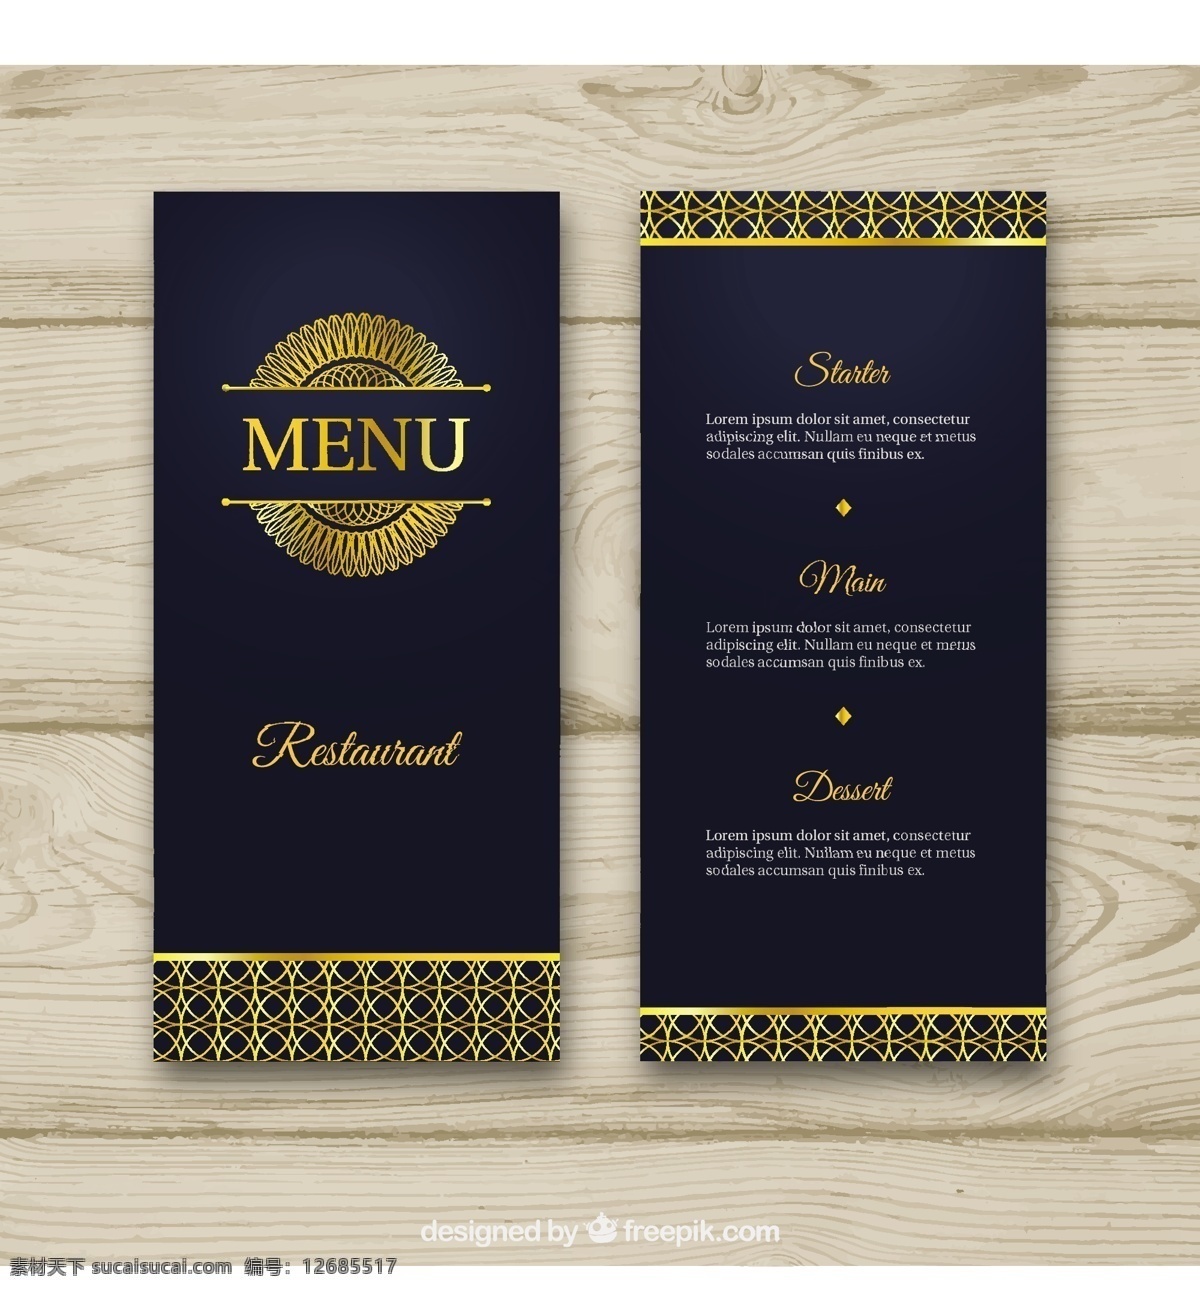 精美 黄金 菜单 模板 标志 框架 食物 餐厅 曼荼罗 饰品 厨师 豪华 餐厅菜单 优雅 金 平 烹饪 金框 餐厅标志